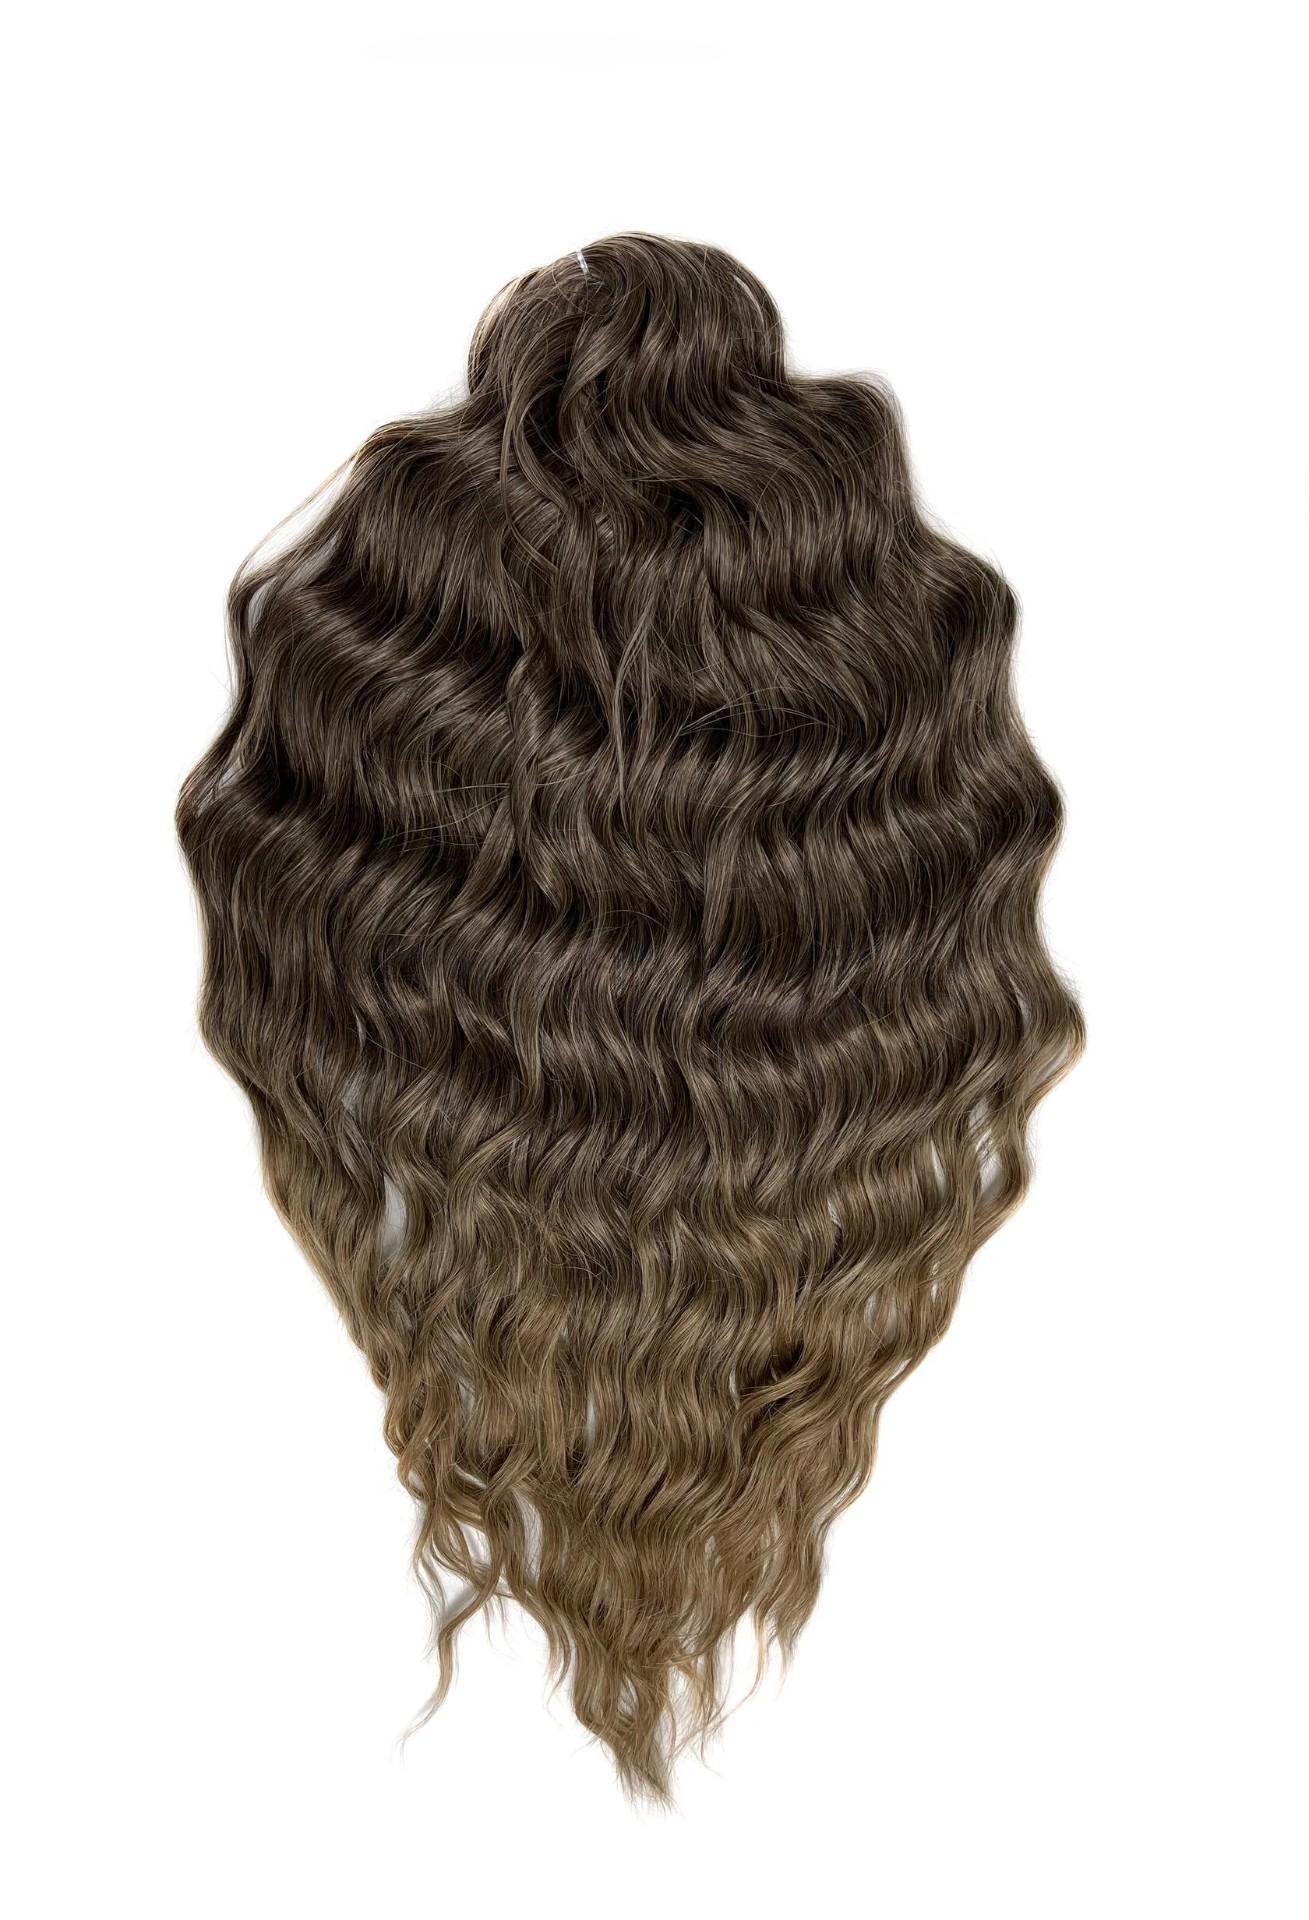 Афрокудри для плетения волос Anna T8 14 русый длина 60 вес 300г афрокудри для плетения волос ariel ариэль fire оранжевый длина 66см вес 300г